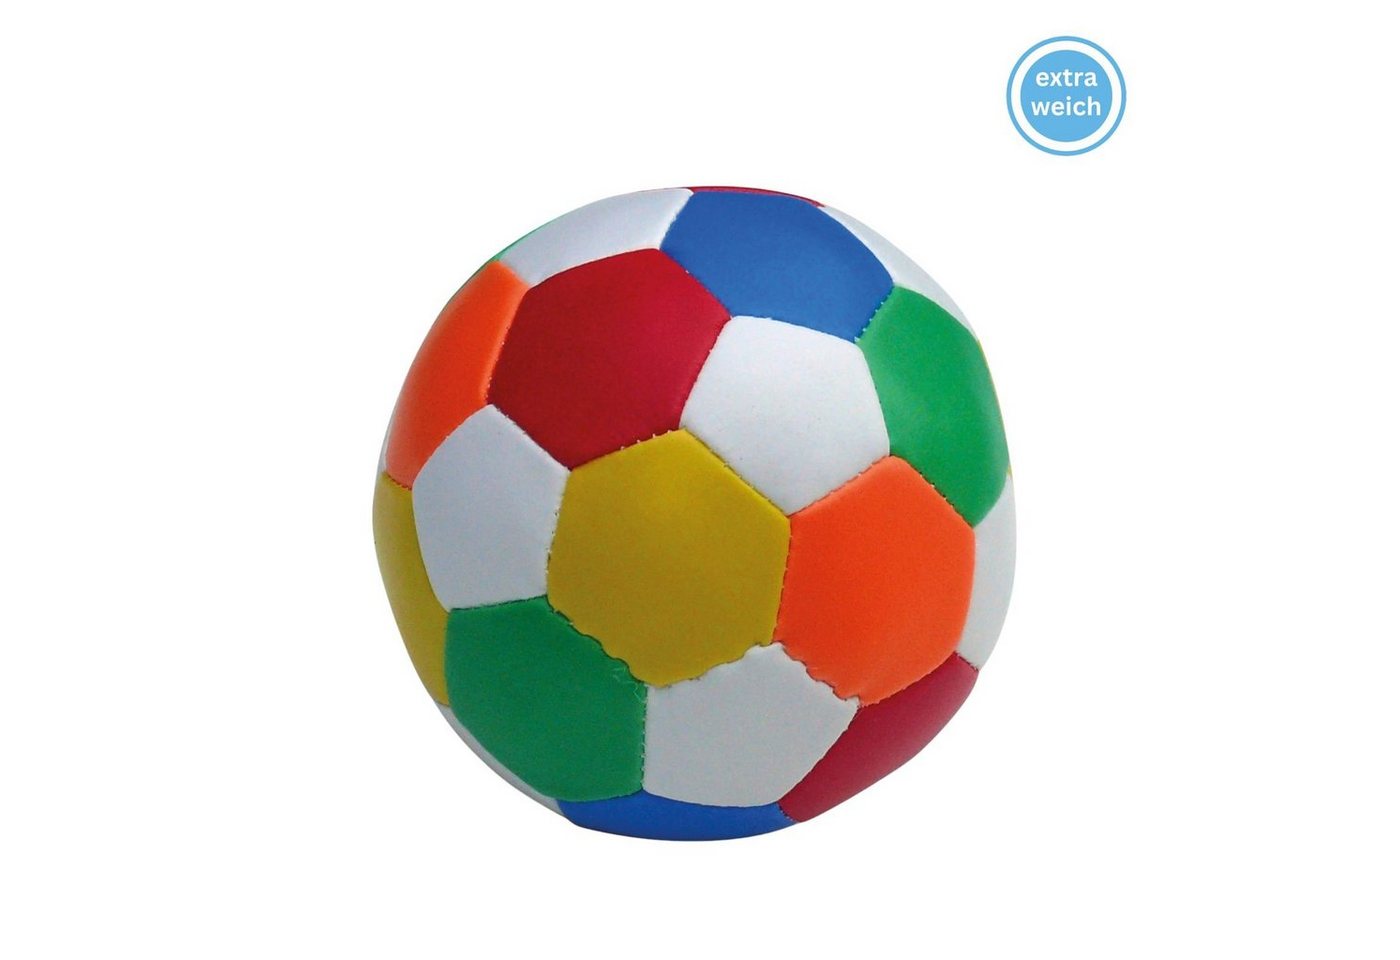 alldoro Softball 60303, Ø 10 cm bunt, extra weicher, kleiner Spielball für Kinder von alldoro